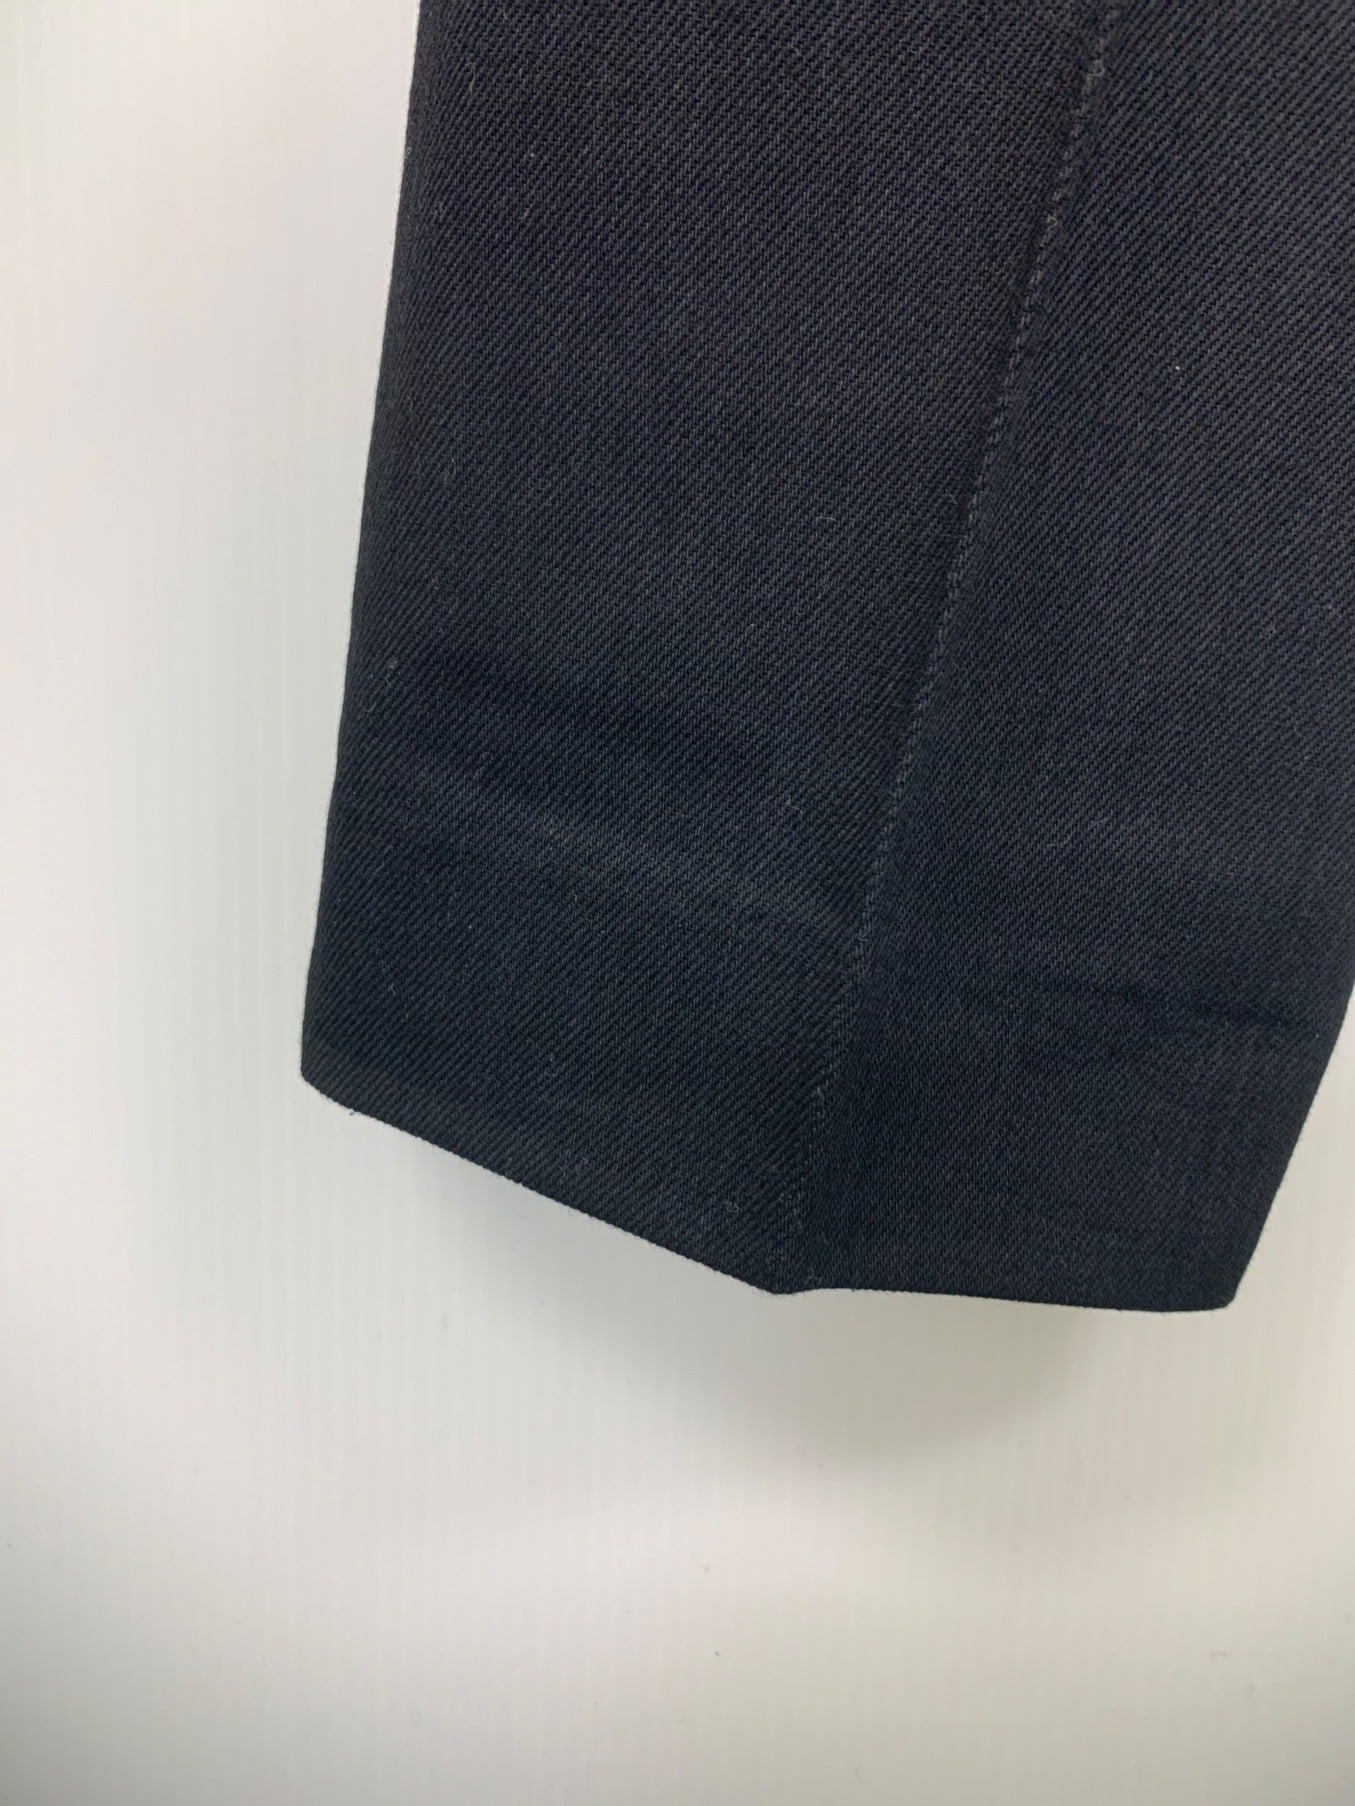 กฎระเบียบ yohji yamamoto กางเกงเรียวผ้าขนสัตว์ผสม / กางเกงที่ซ่อนอยู่ FK-P56-115-1A